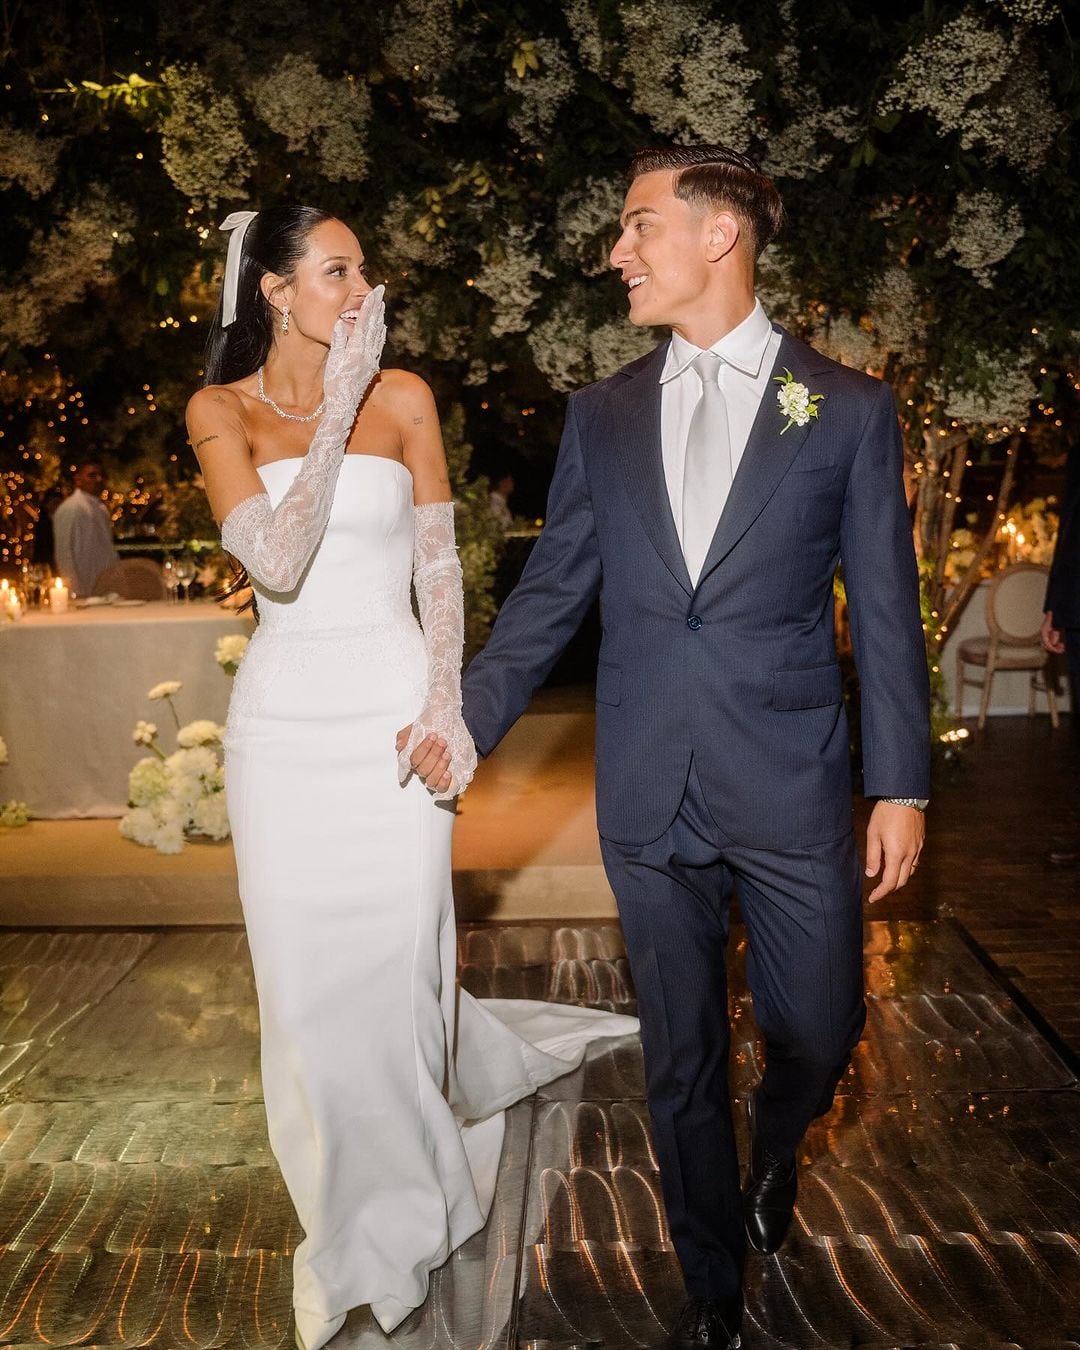 Casamiento de Oriana Sabatini y Paulo Dybala: la felicidad de los recién casados